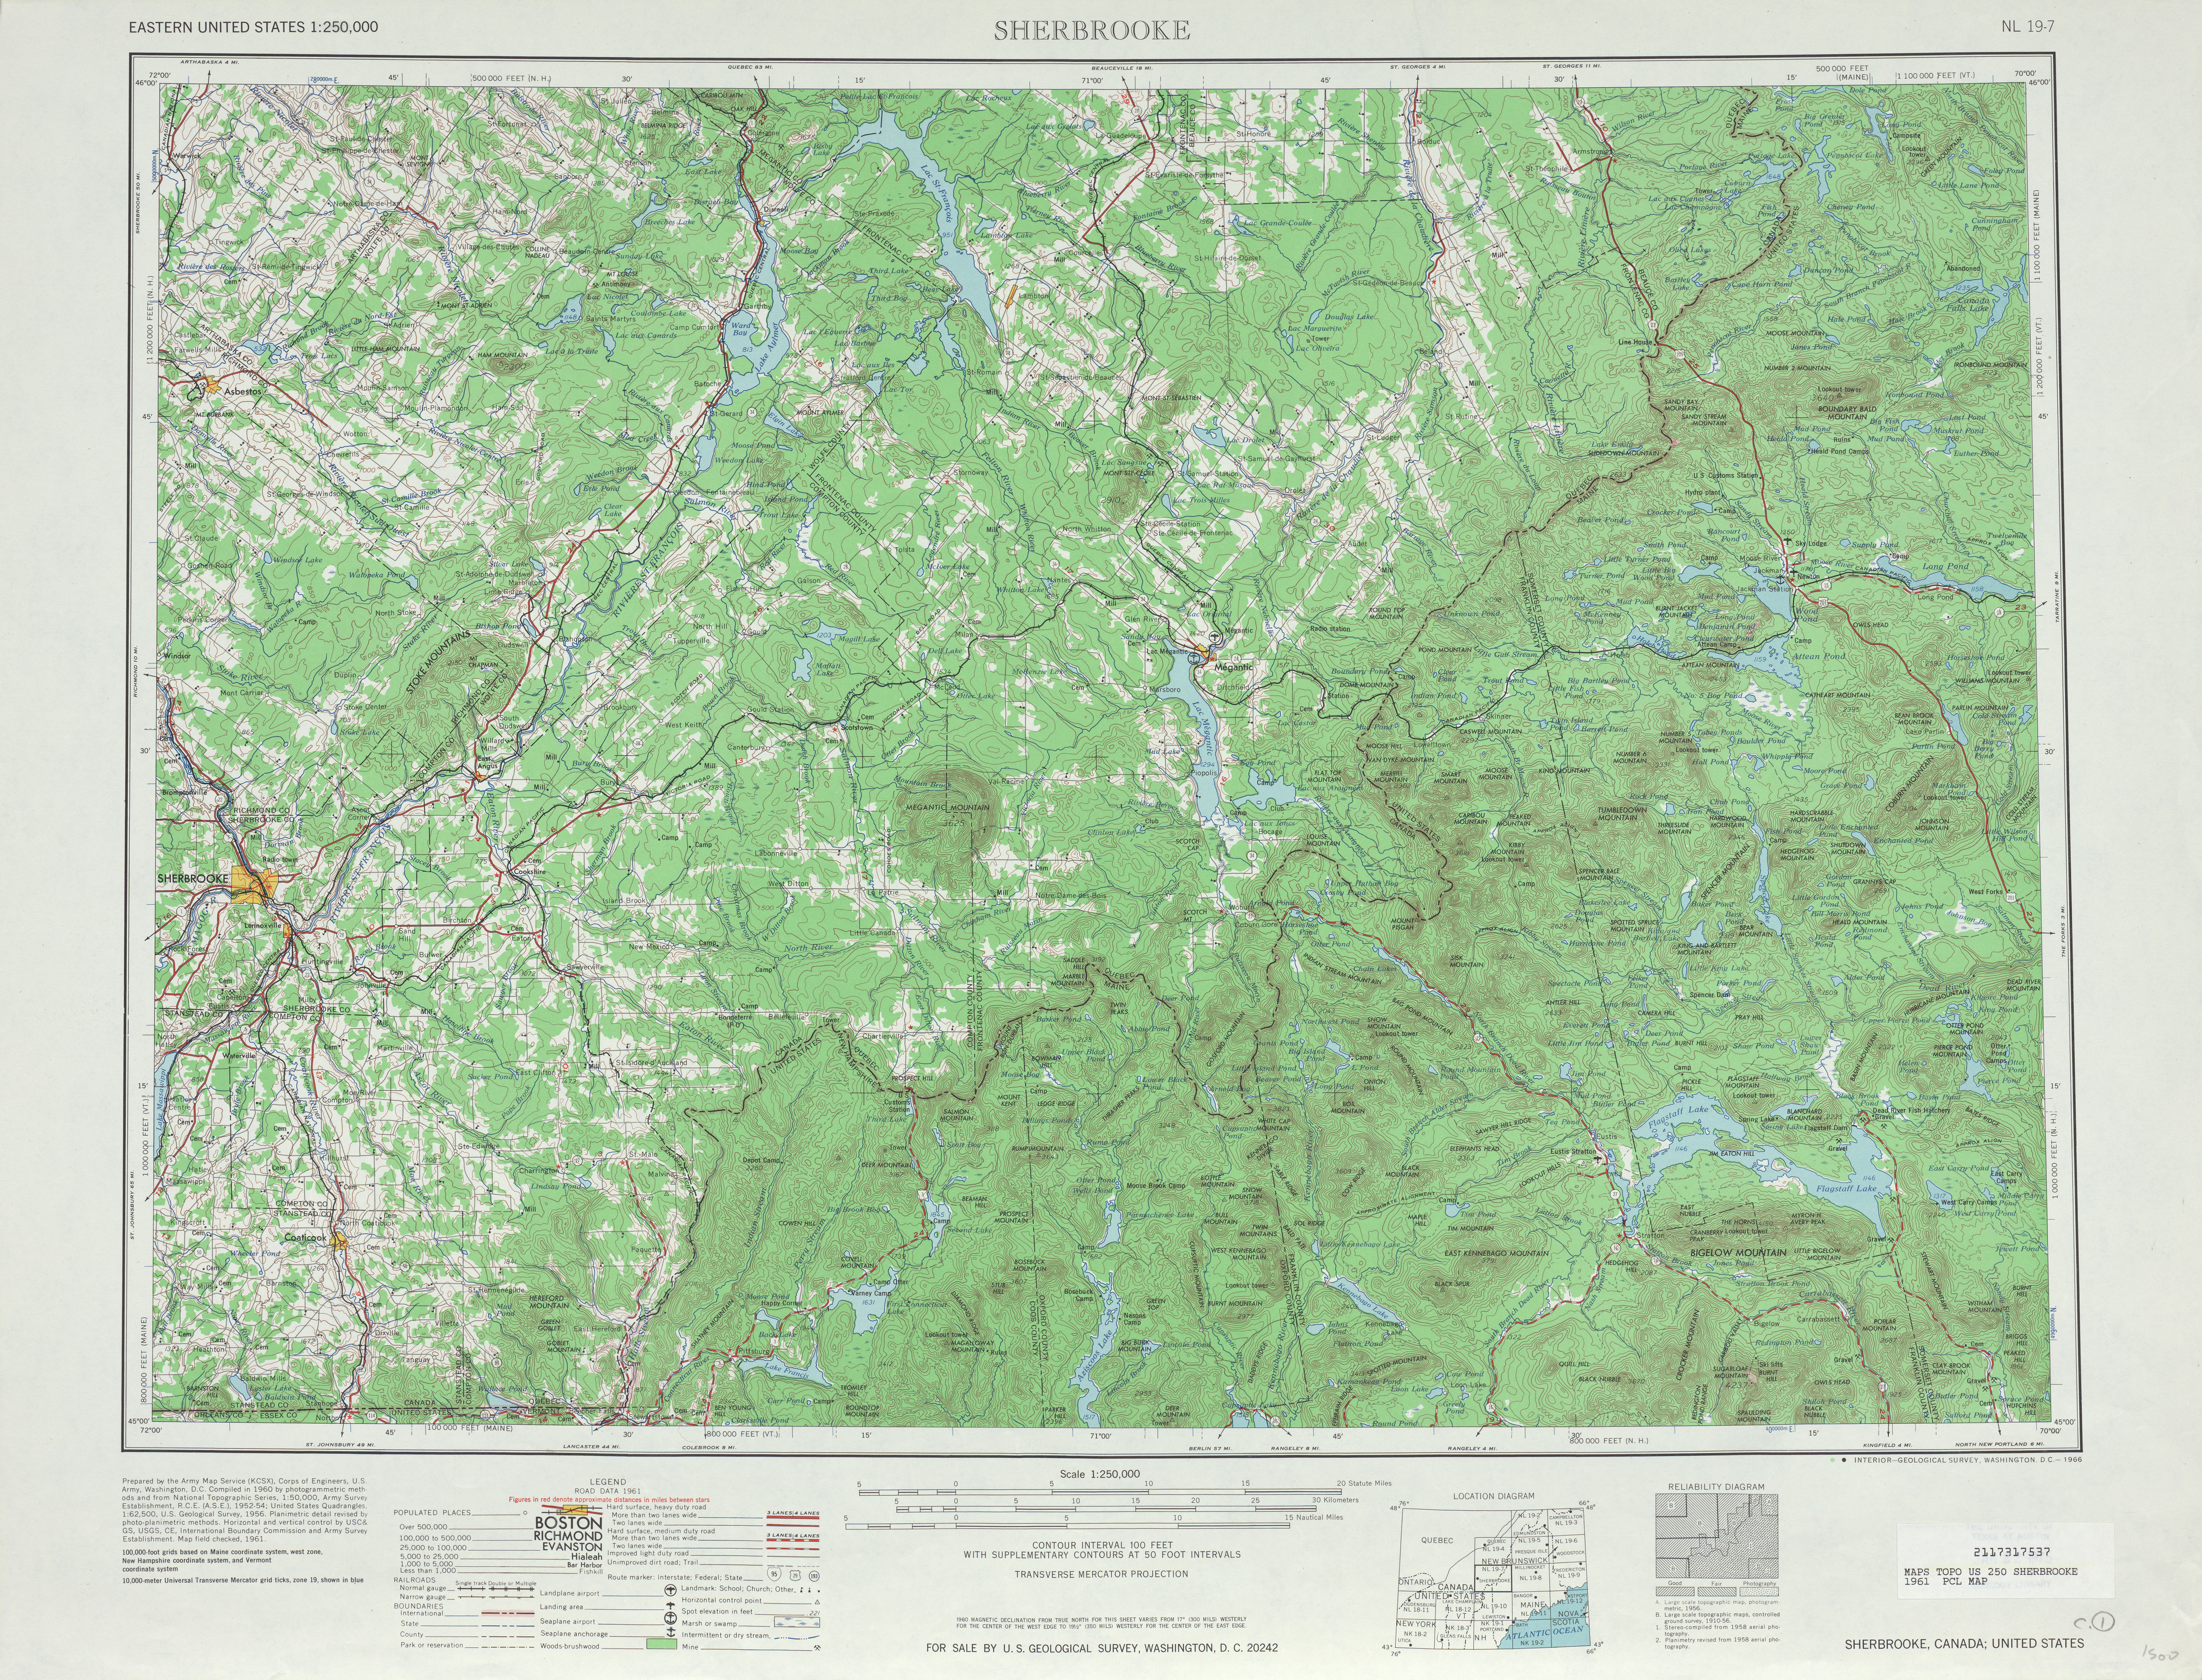 Hoja Sherbrooke del Mapa Topográfico de los Estados Unidos 1961